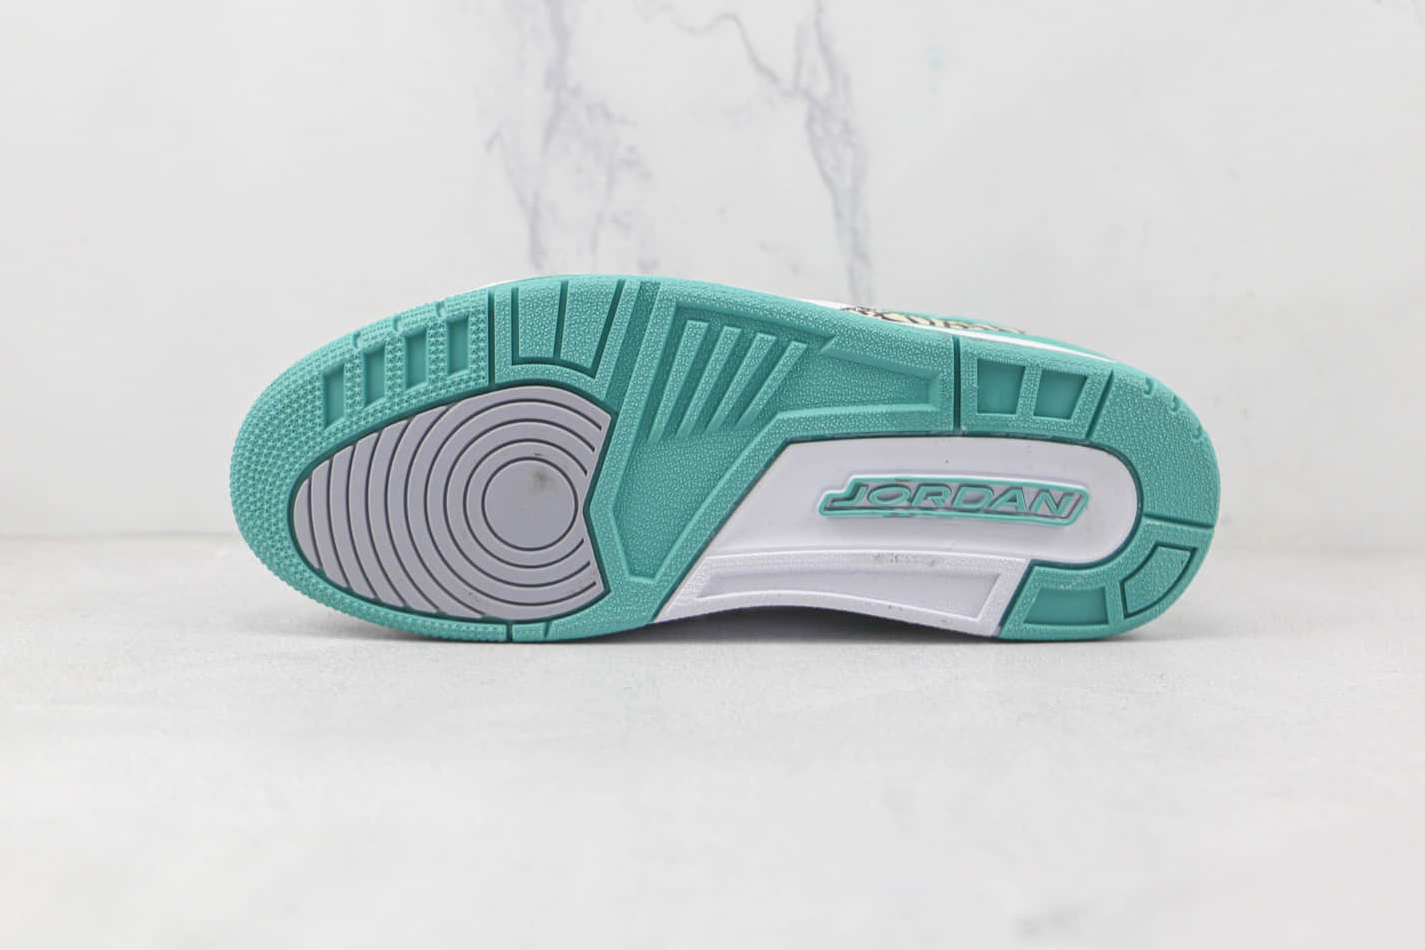 Nike Jordan Legacy 312 Low White Washed Teal CD7069-130 - Shop Now!